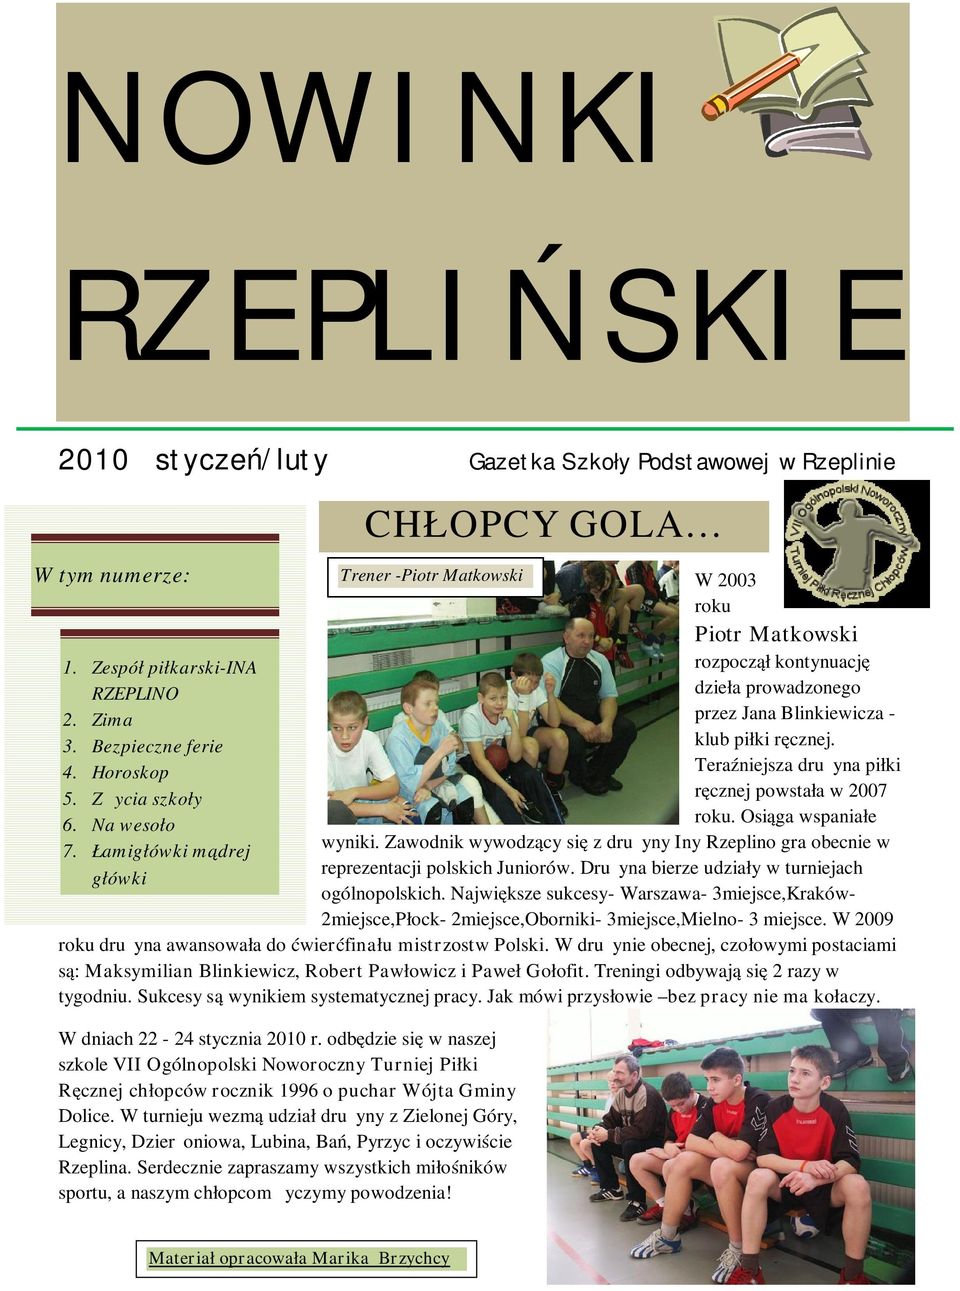 Teraźniejsza drużyna piłki ręcznej powstała w 2007 roku. Osiąga wspaniałe wyniki. Zawodnik wywodzący się z drużyny Iny Rzeplino gra obecnie w reprezentacji polskich Juniorów.